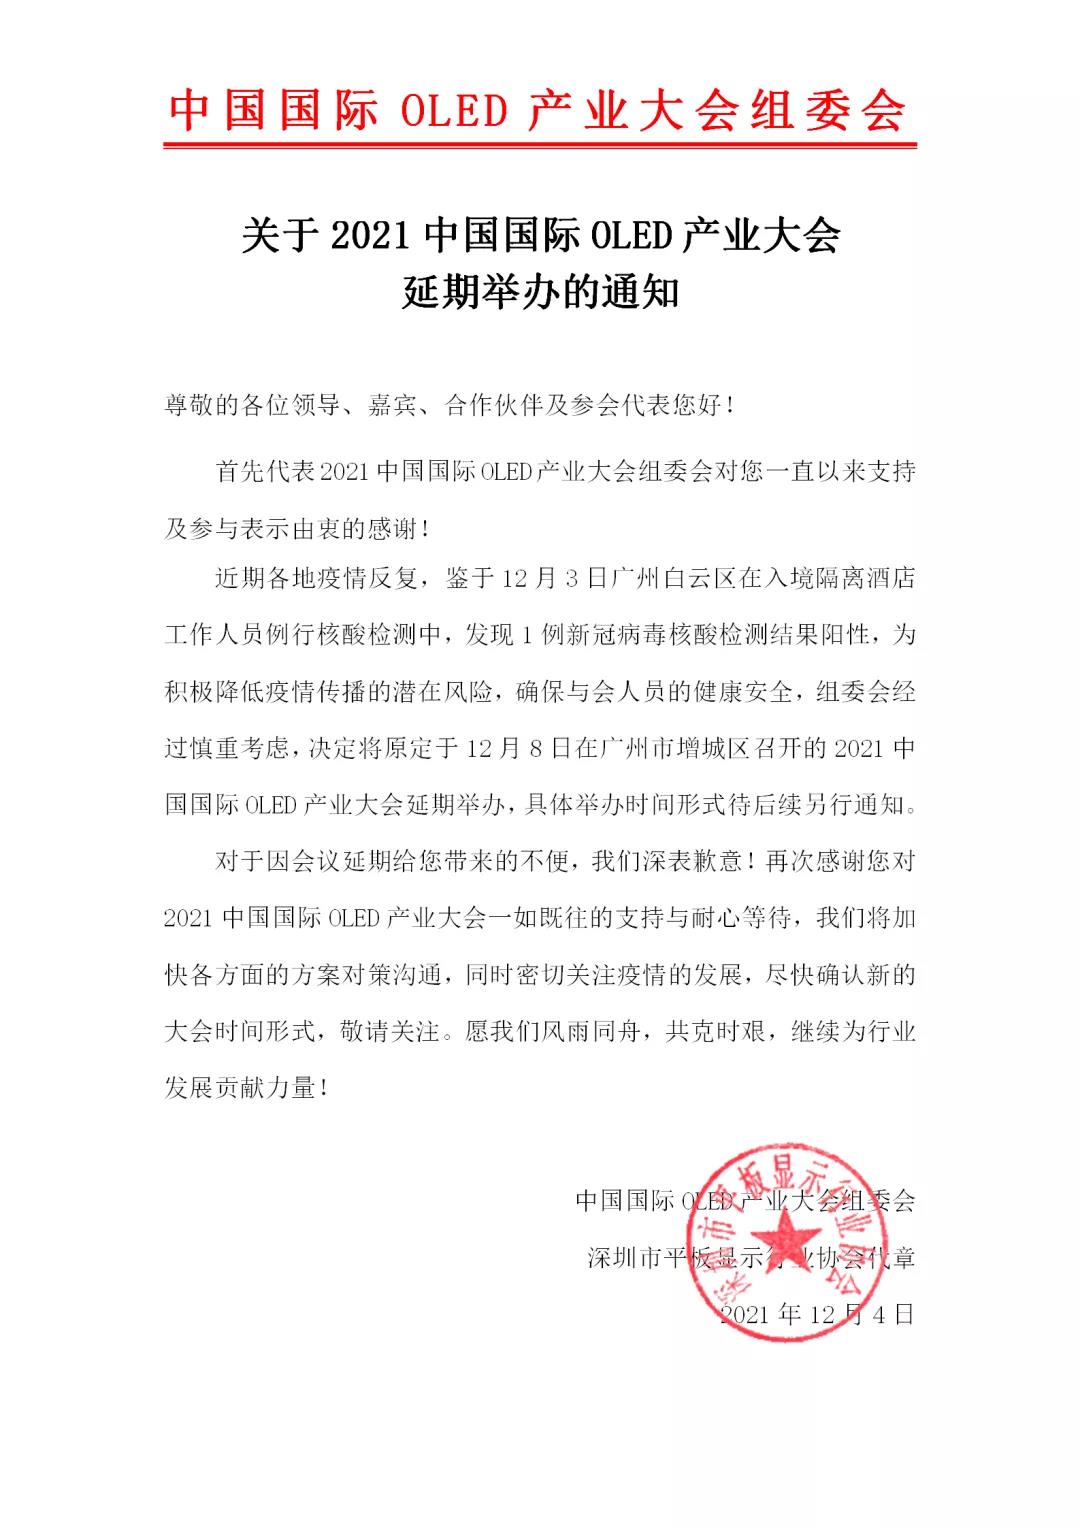 关于2021中国国际OLED产业大会延期举办的通知